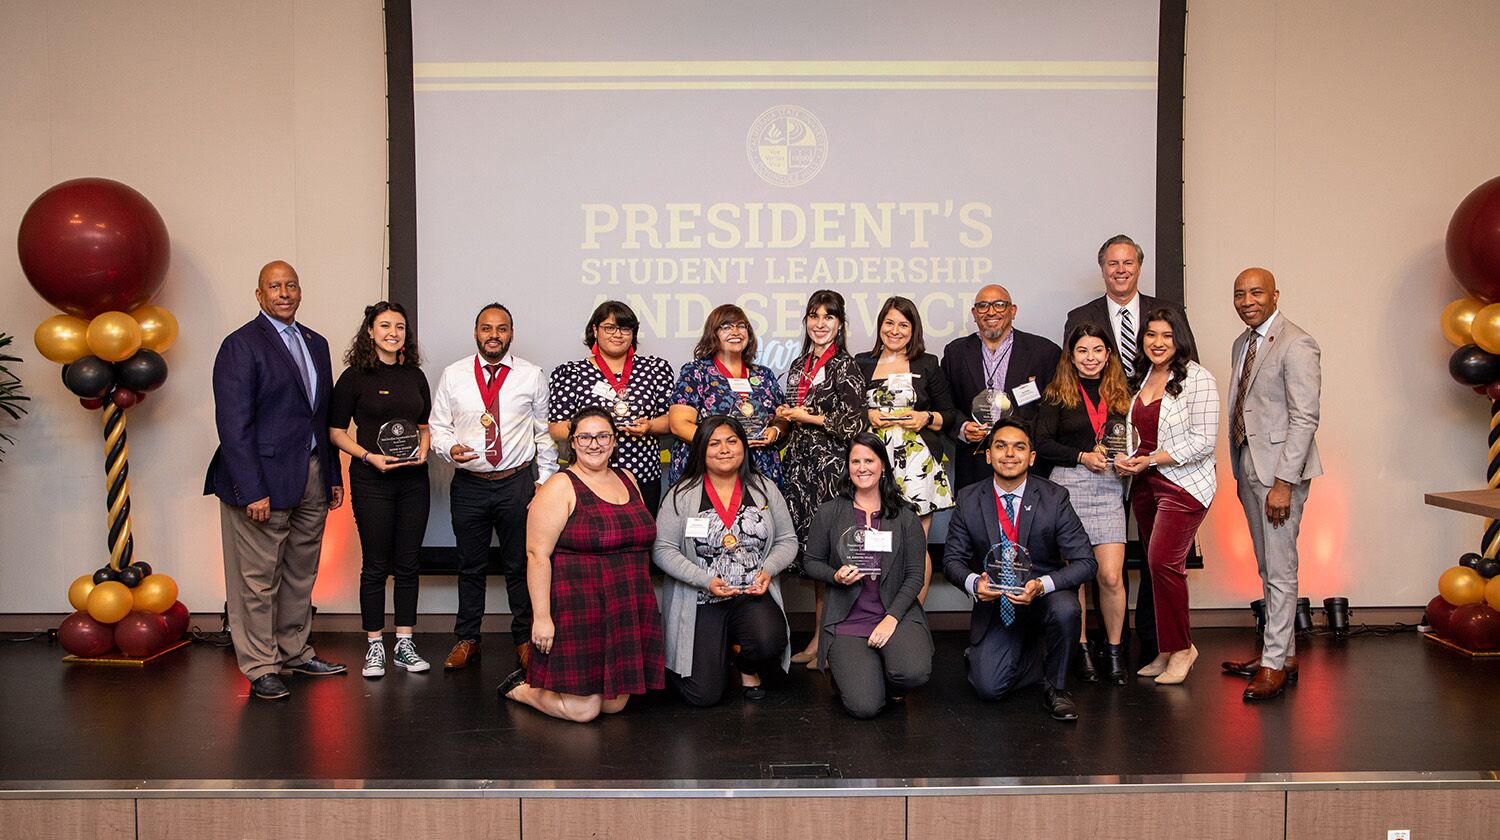 President's Student Leadership Awards winners